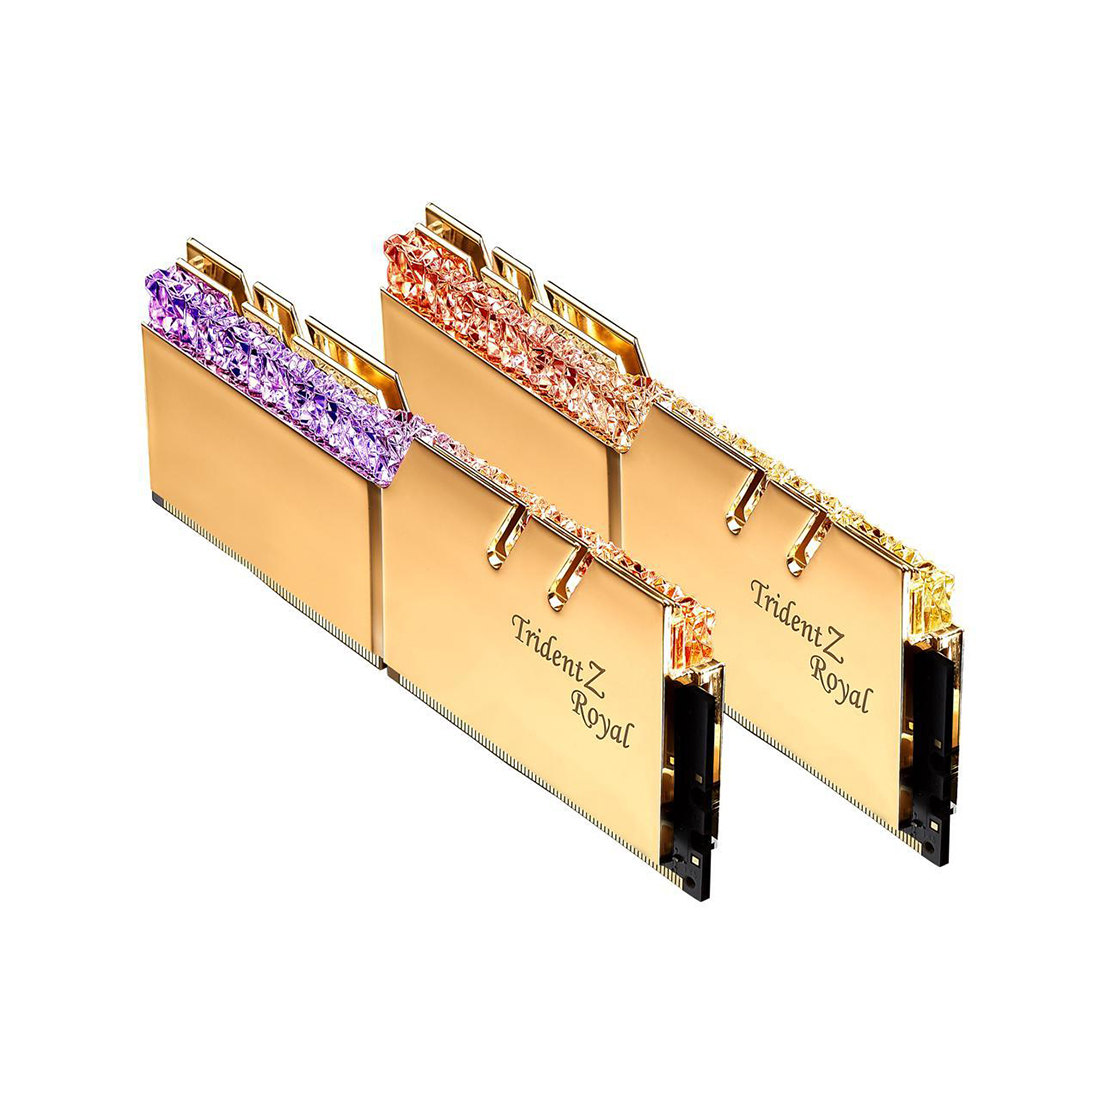 картинка Комплект модулей памяти G.SKILL TridentZ Royal F4-3600C19D-32GTRG DDR4 32GB (Kit 2x16GB) 3600MHz от магазина itmag.kz